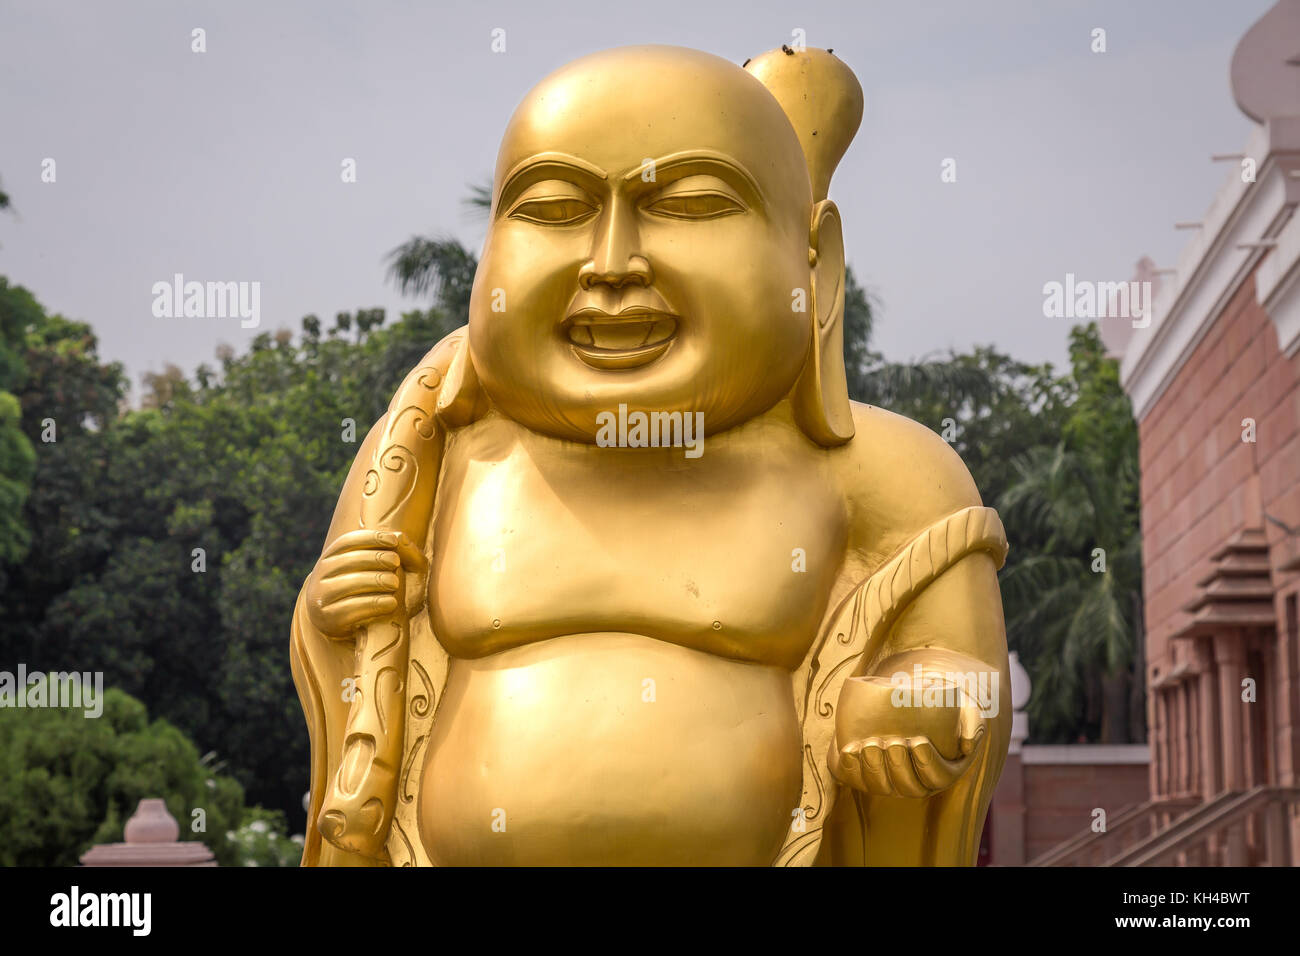 Golden laughing Buddha sculpture at Wat Thai Buddhist monastery at Sarnath, Varanasi Stock Photo